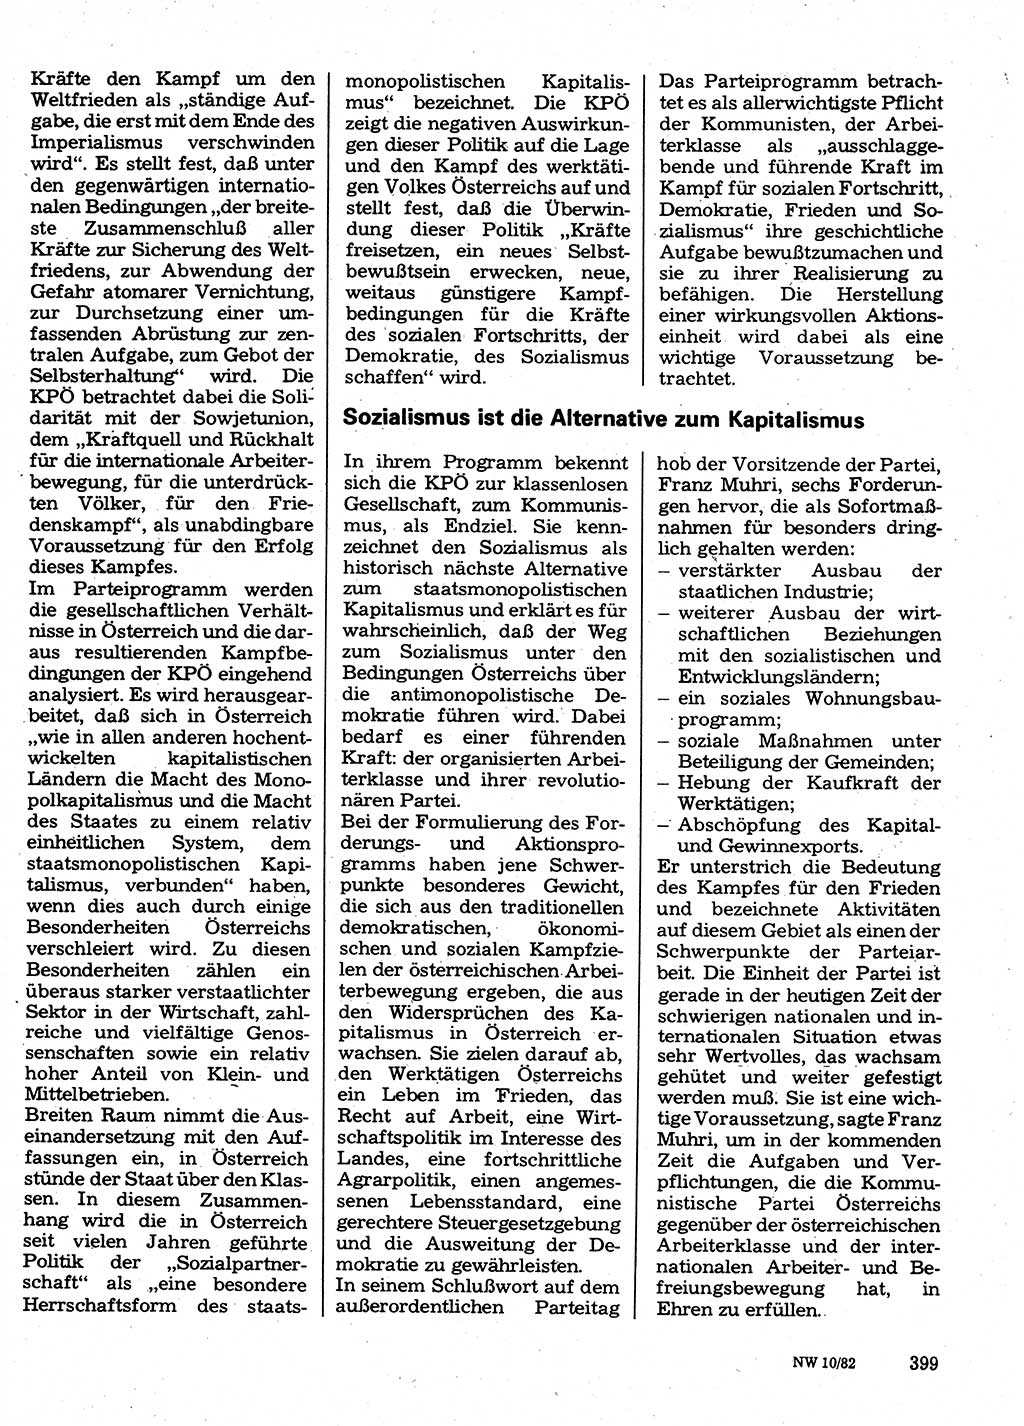 Neuer Weg (NW), Organ des Zentralkomitees (ZK) der SED (Sozialistische Einheitspartei Deutschlands) für Fragen des Parteilebens, 37. Jahrgang [Deutsche Demokratische Republik (DDR)] 1982, Seite 399 (NW ZK SED DDR 1982, S. 399)